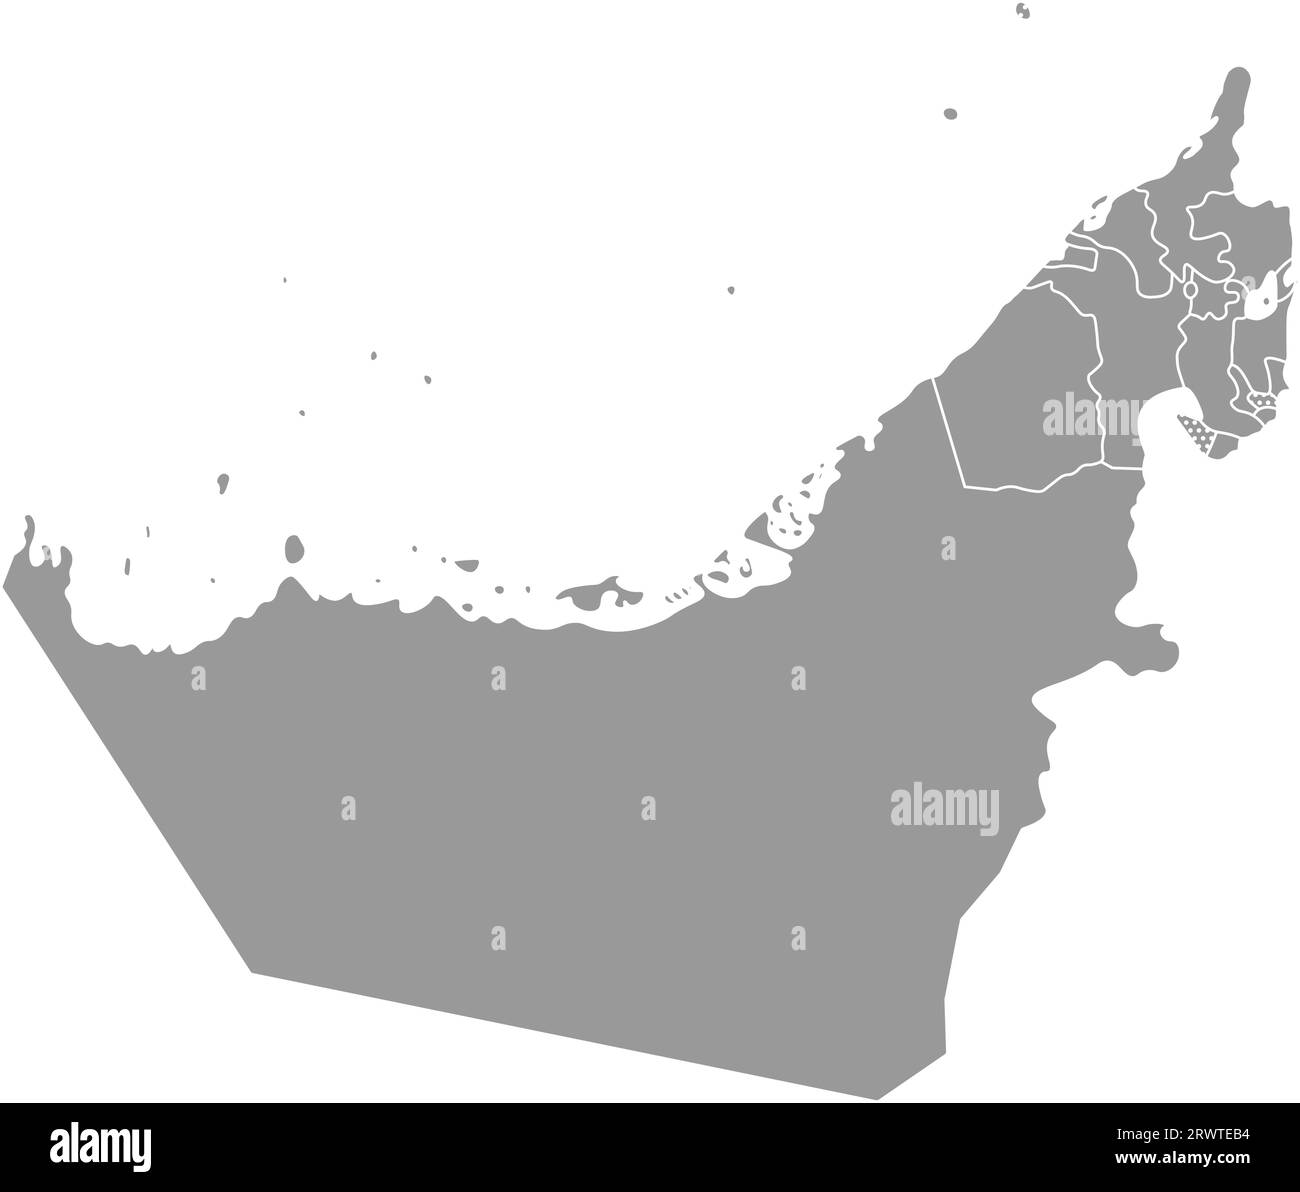 Illustrazione semplificata con isolamento vettoriale con silhouette grigia sulla terraferma degli Emirati Arabi Uniti (UAE) e confini degli emirati con i nomi. Sfondo bianco Illustrazione Vettoriale